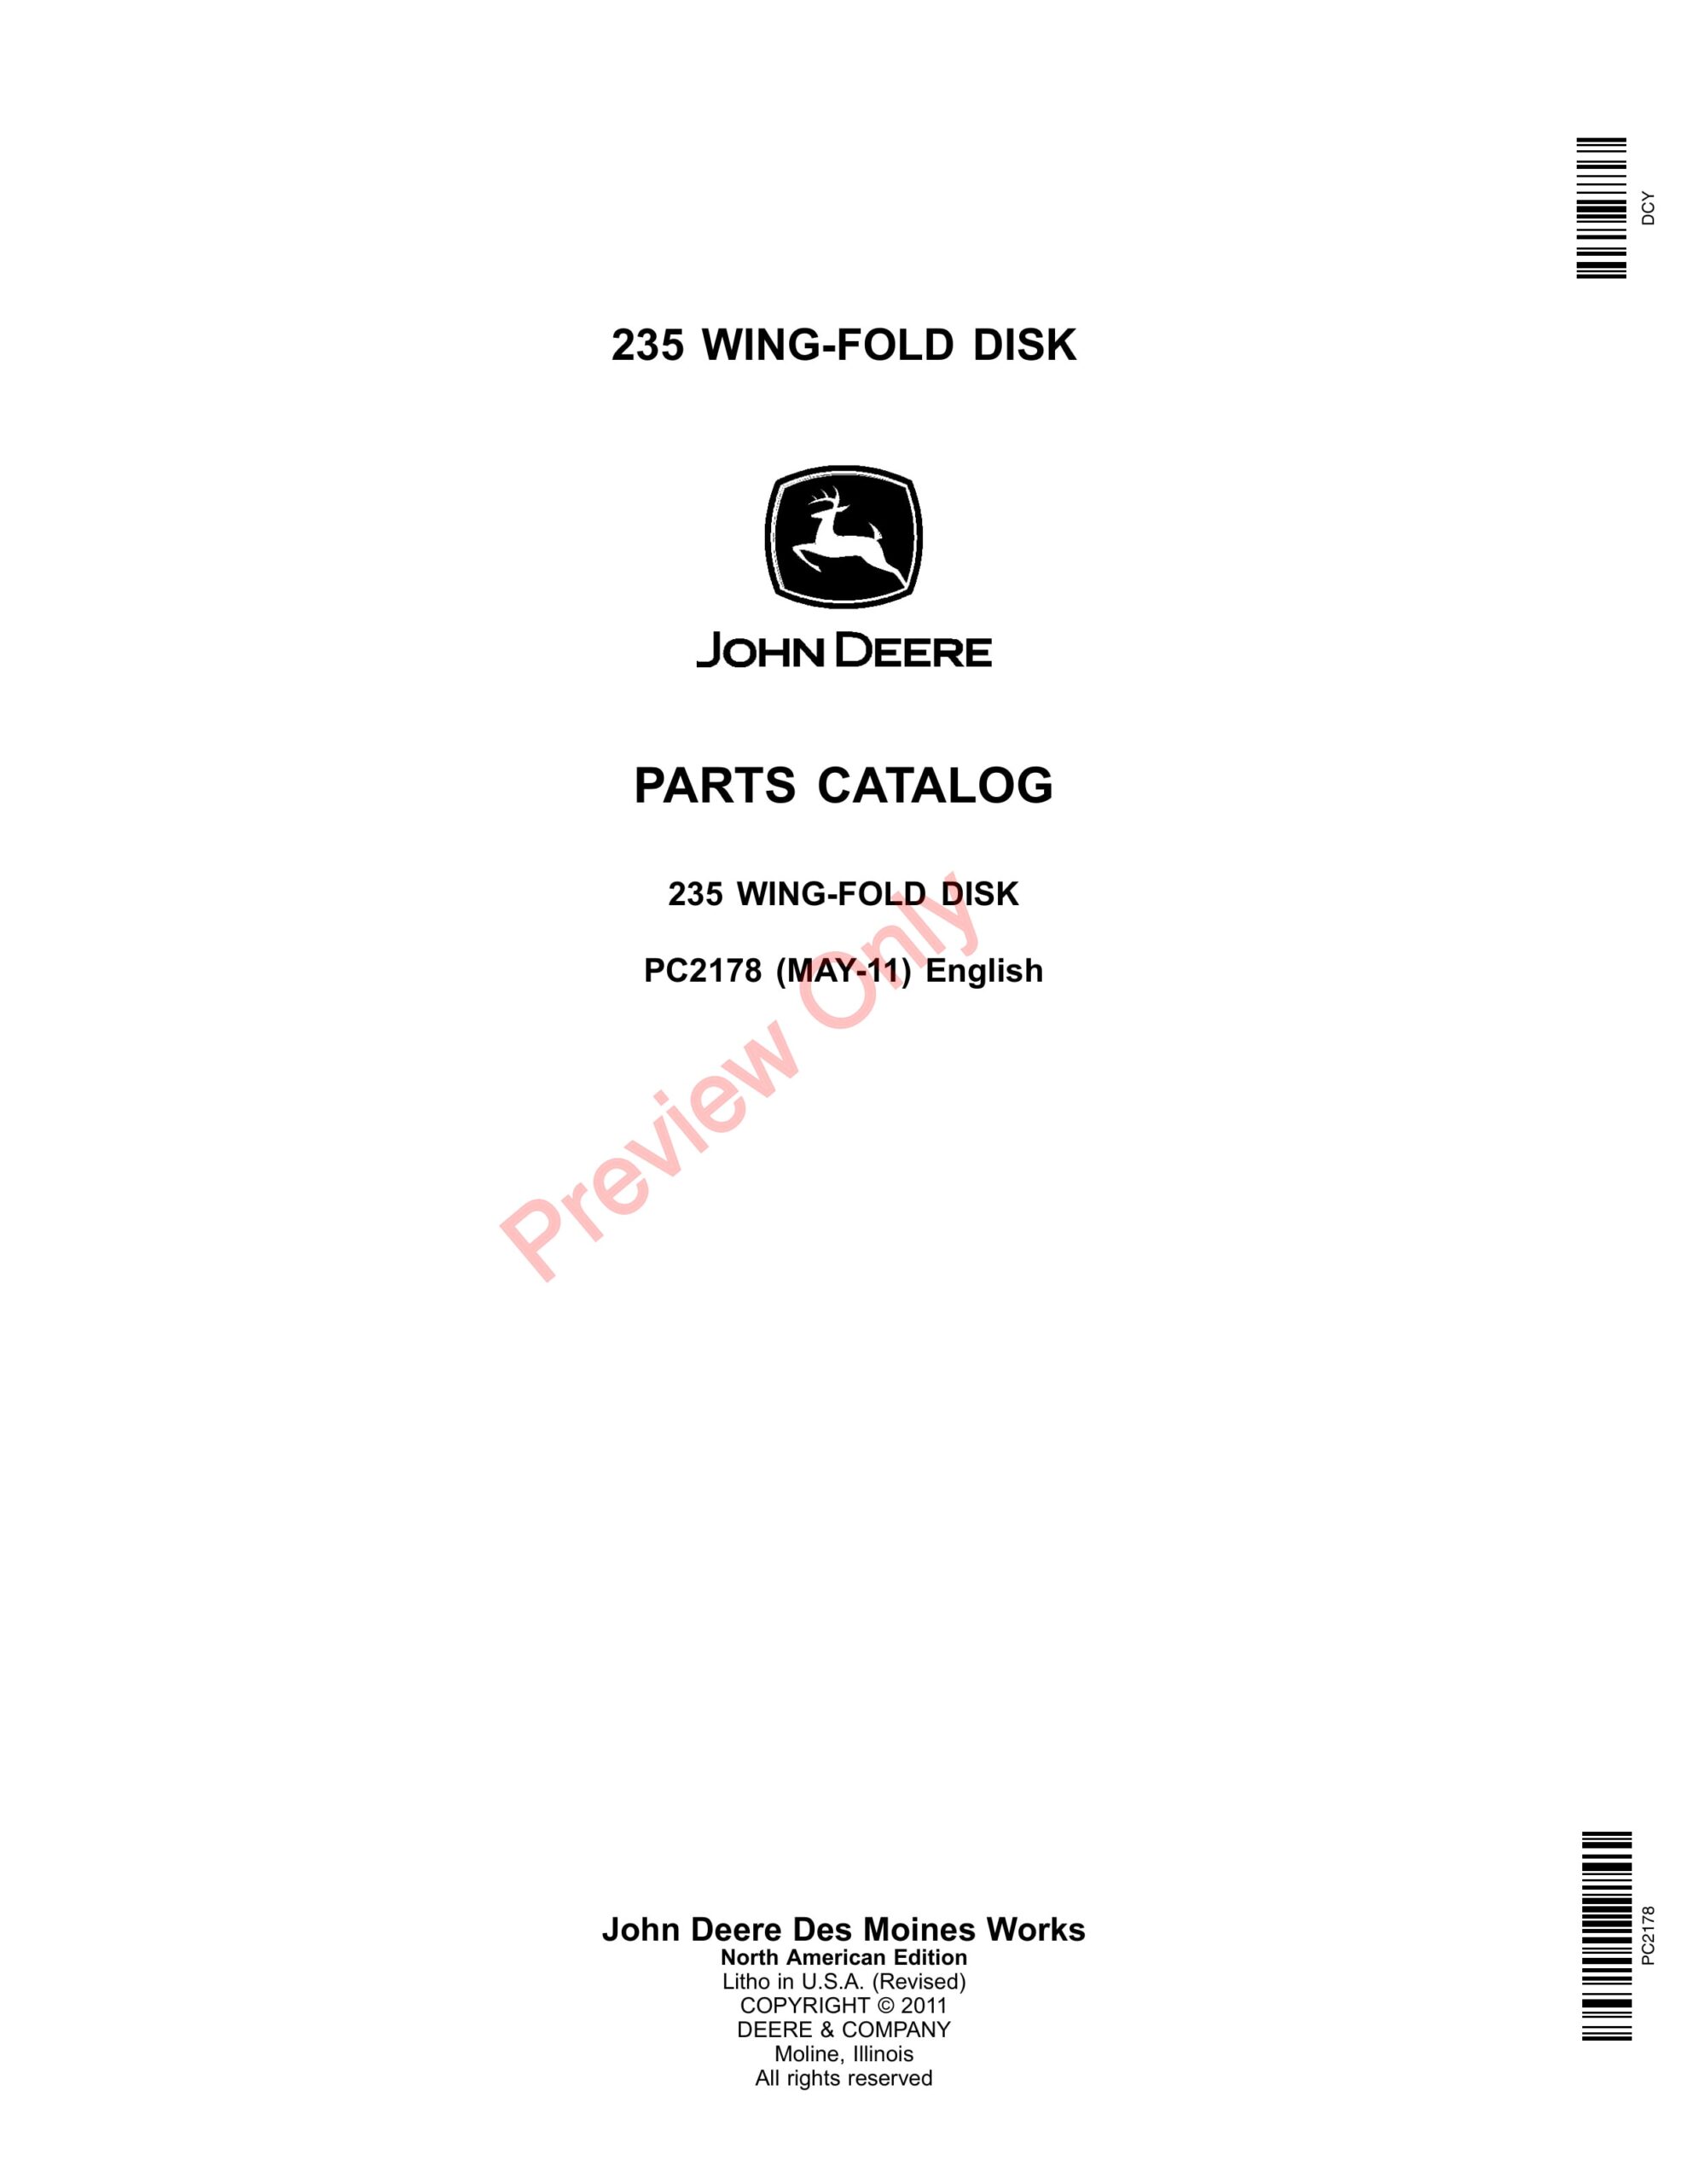 John Deere 235 Wing-Fold Disk Parts Catalog PC2178 31MAY11-1